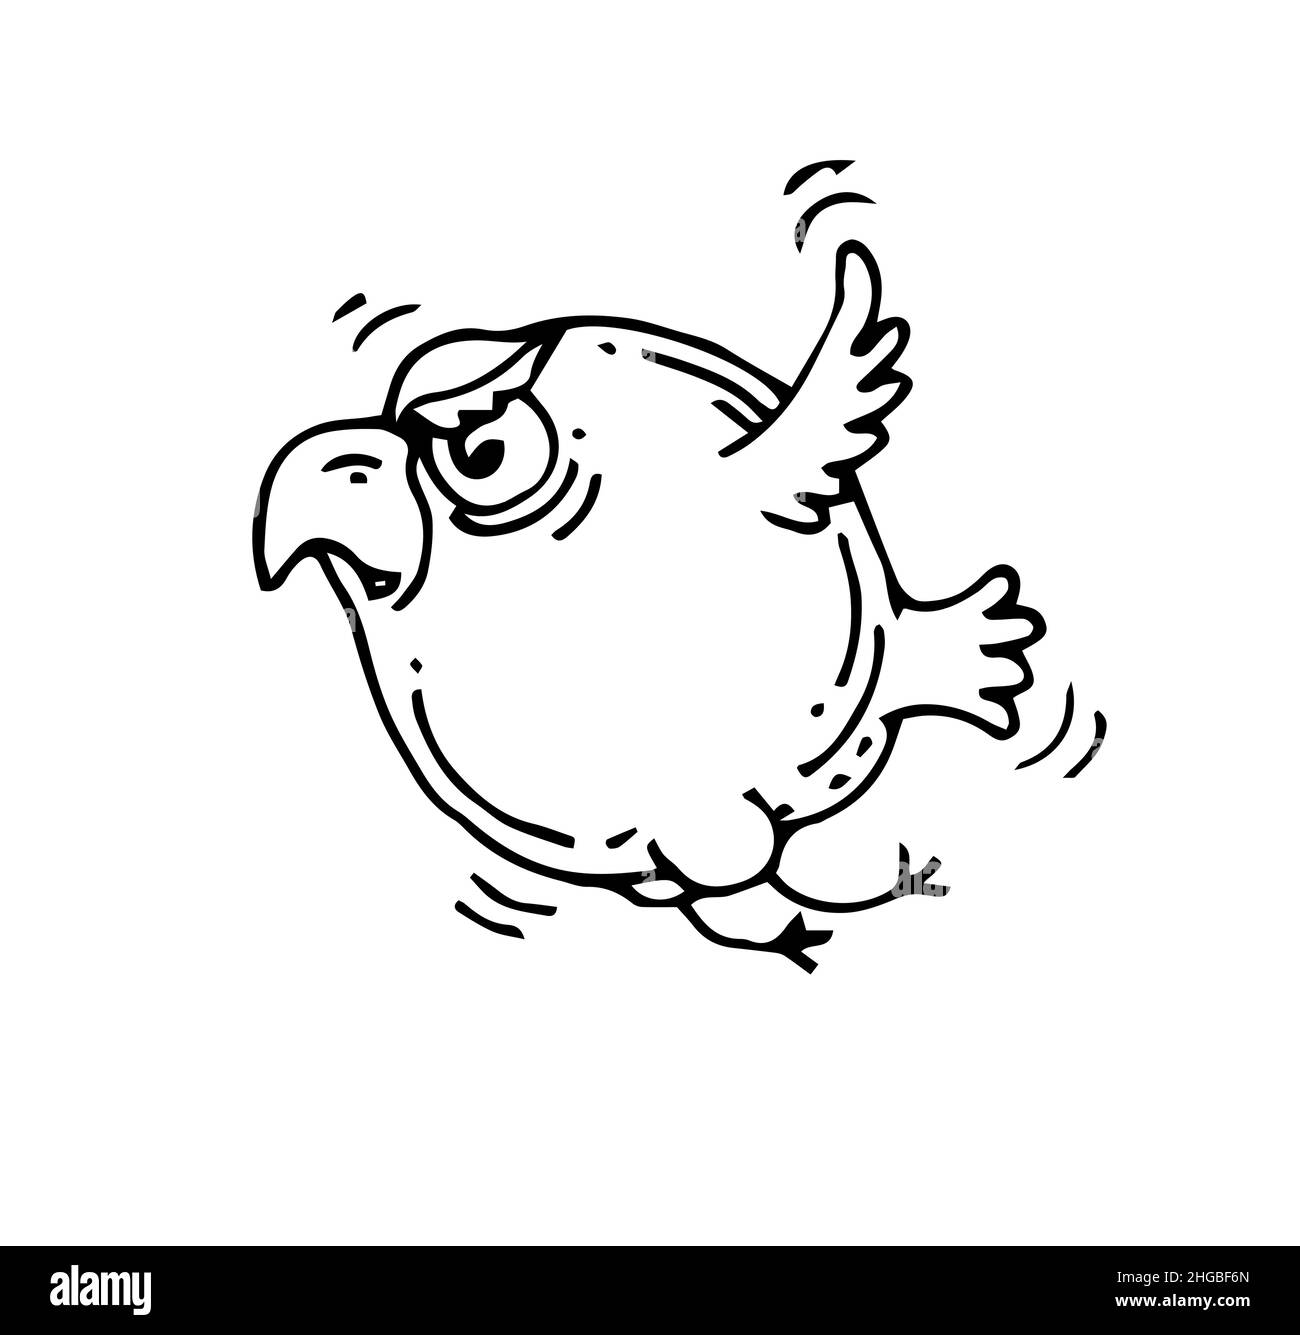 Bird Sketch Vector Illustration in Funny Doodle Style Stock Illustration   Illustration of line funny 121971474